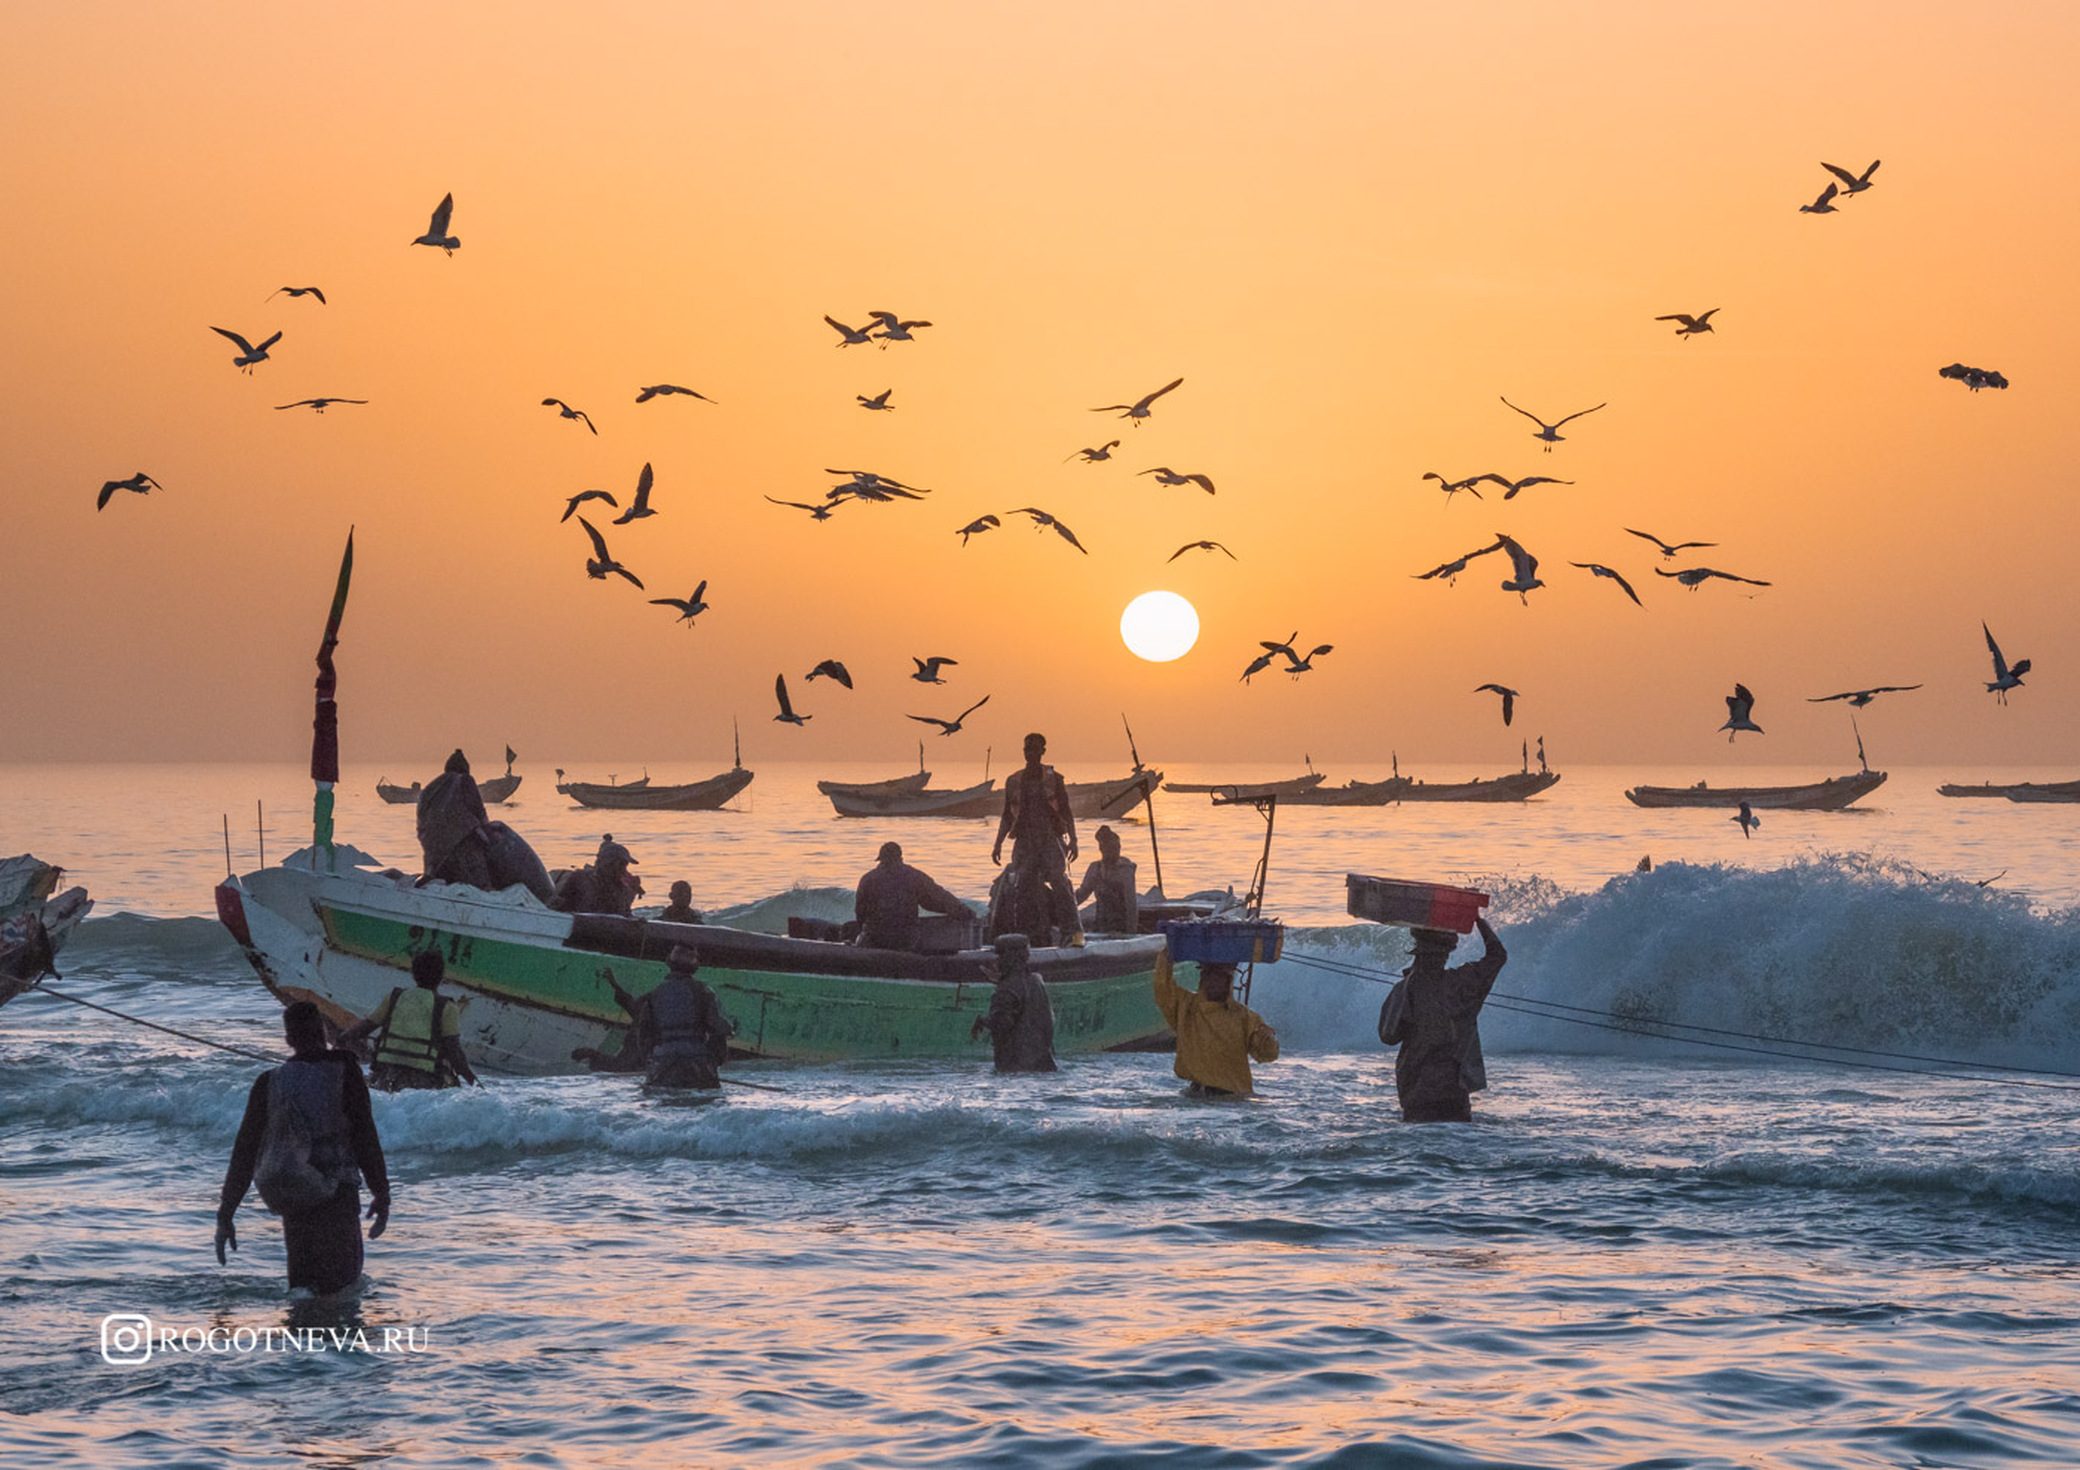 Рыбаки Мавритании